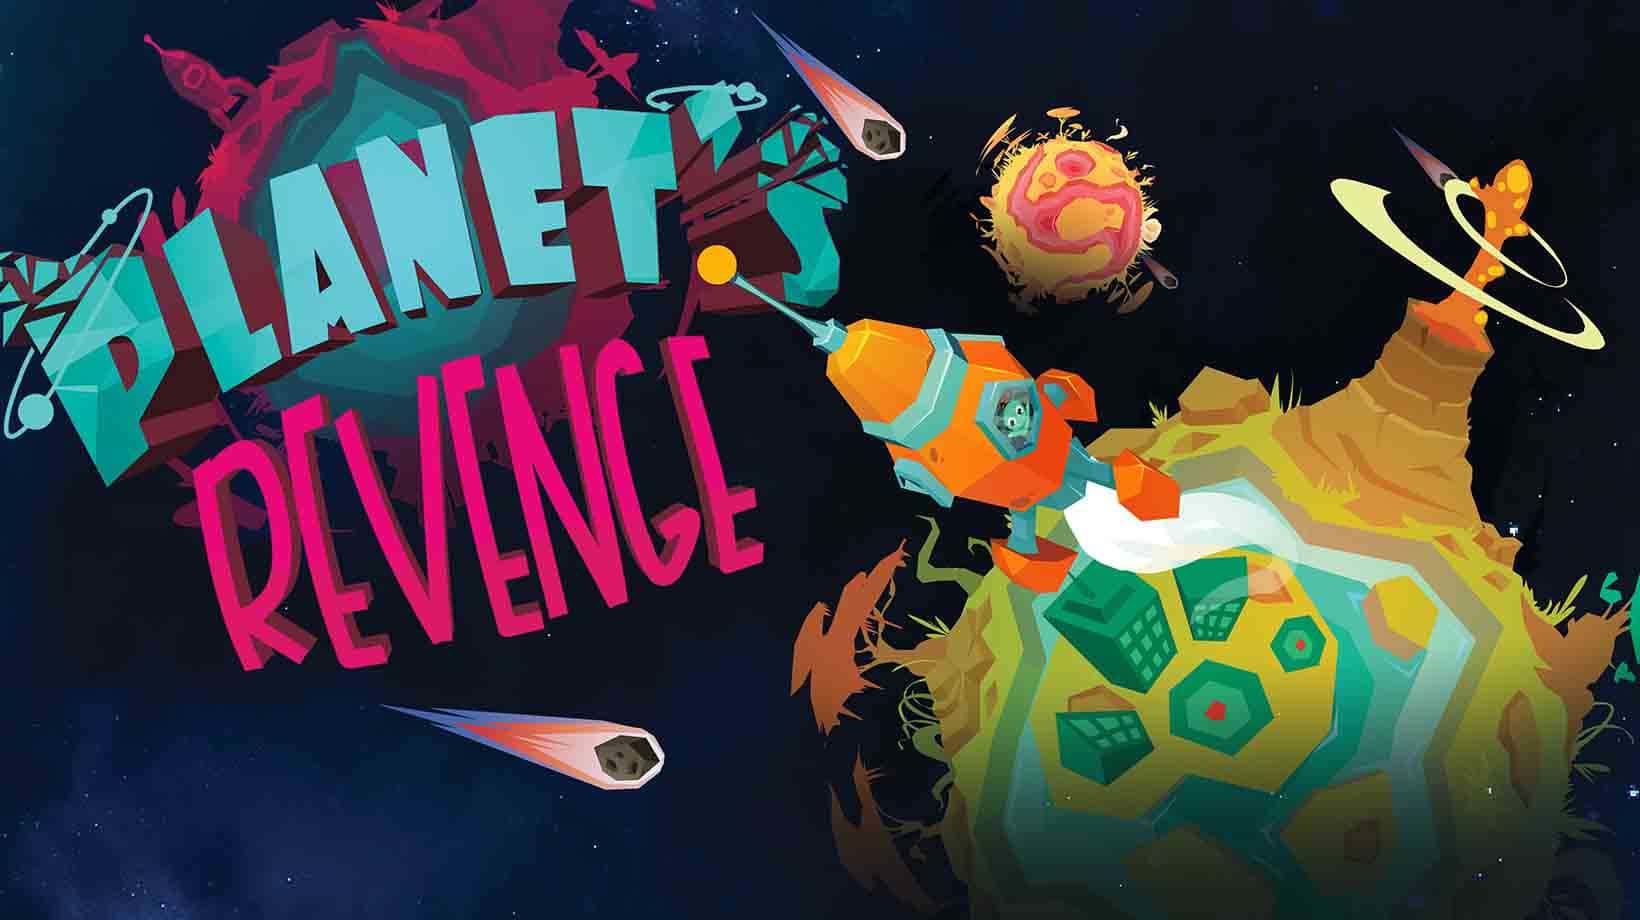 Planet's revenge